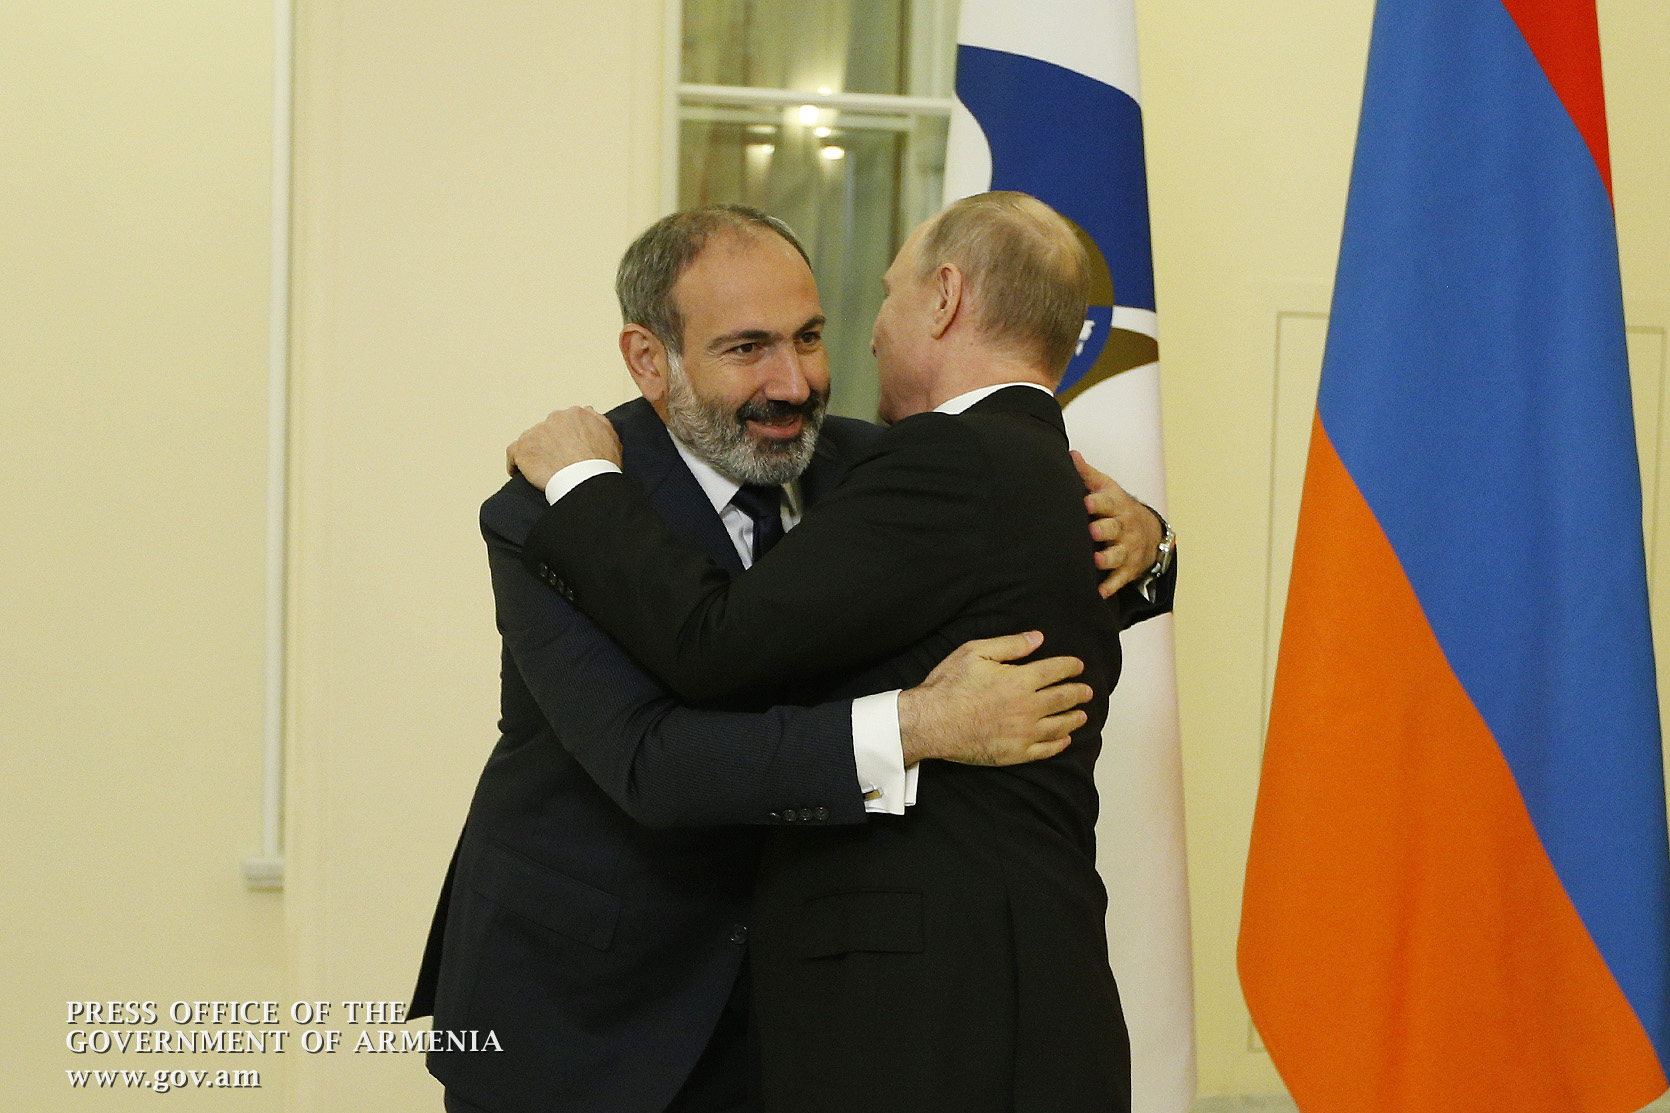 Vladimir Putin congratulates Nikol Pashinyan